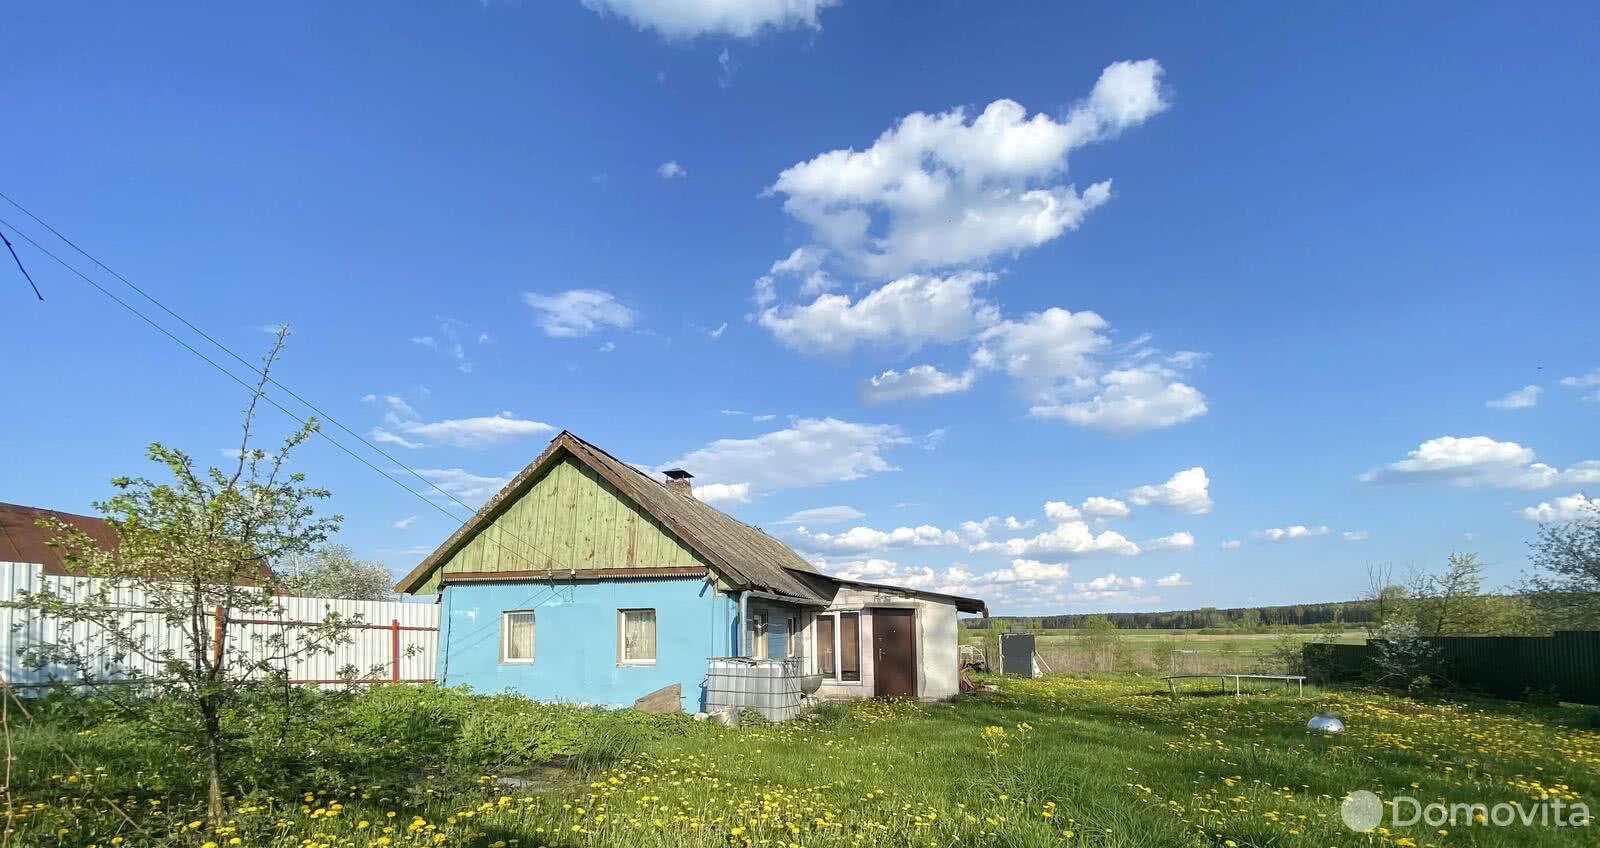 Продать 1-этажный дом в Бервищах, Минская область ул. Центральная, д. 45, 9600USD, код 636470 - фото 1